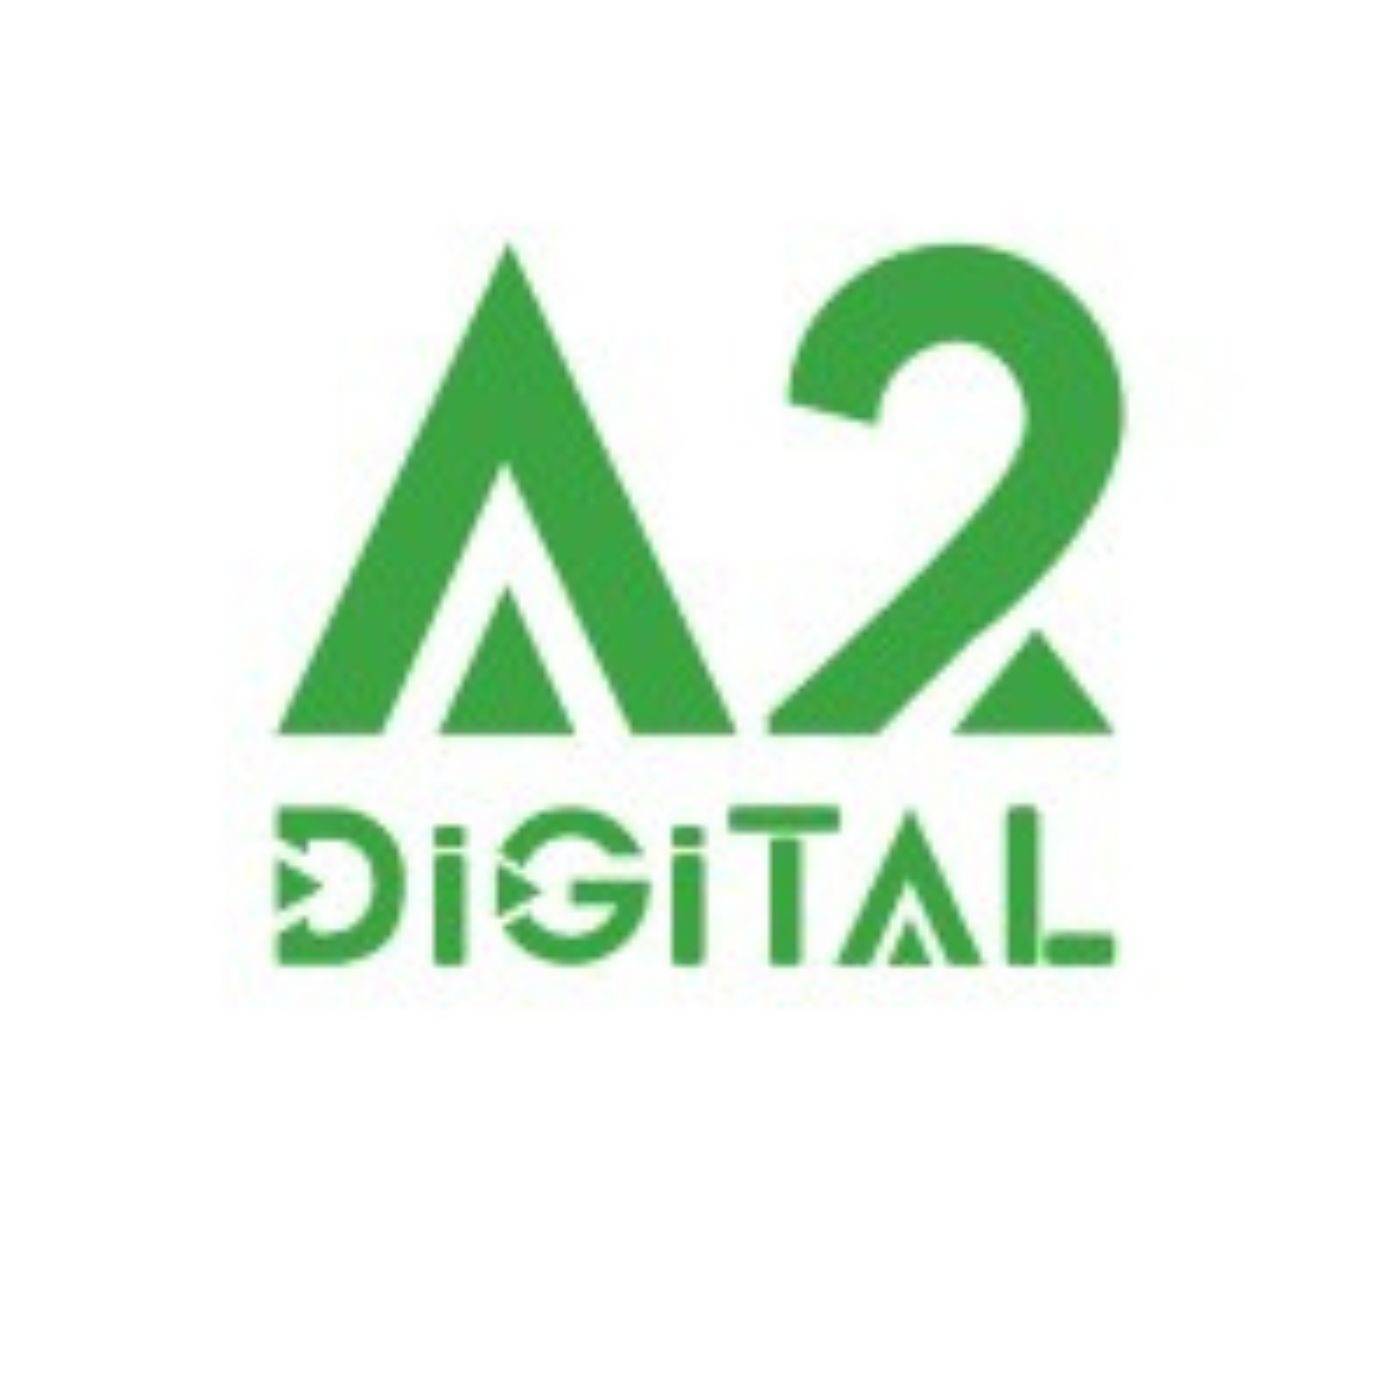 A2 Digital